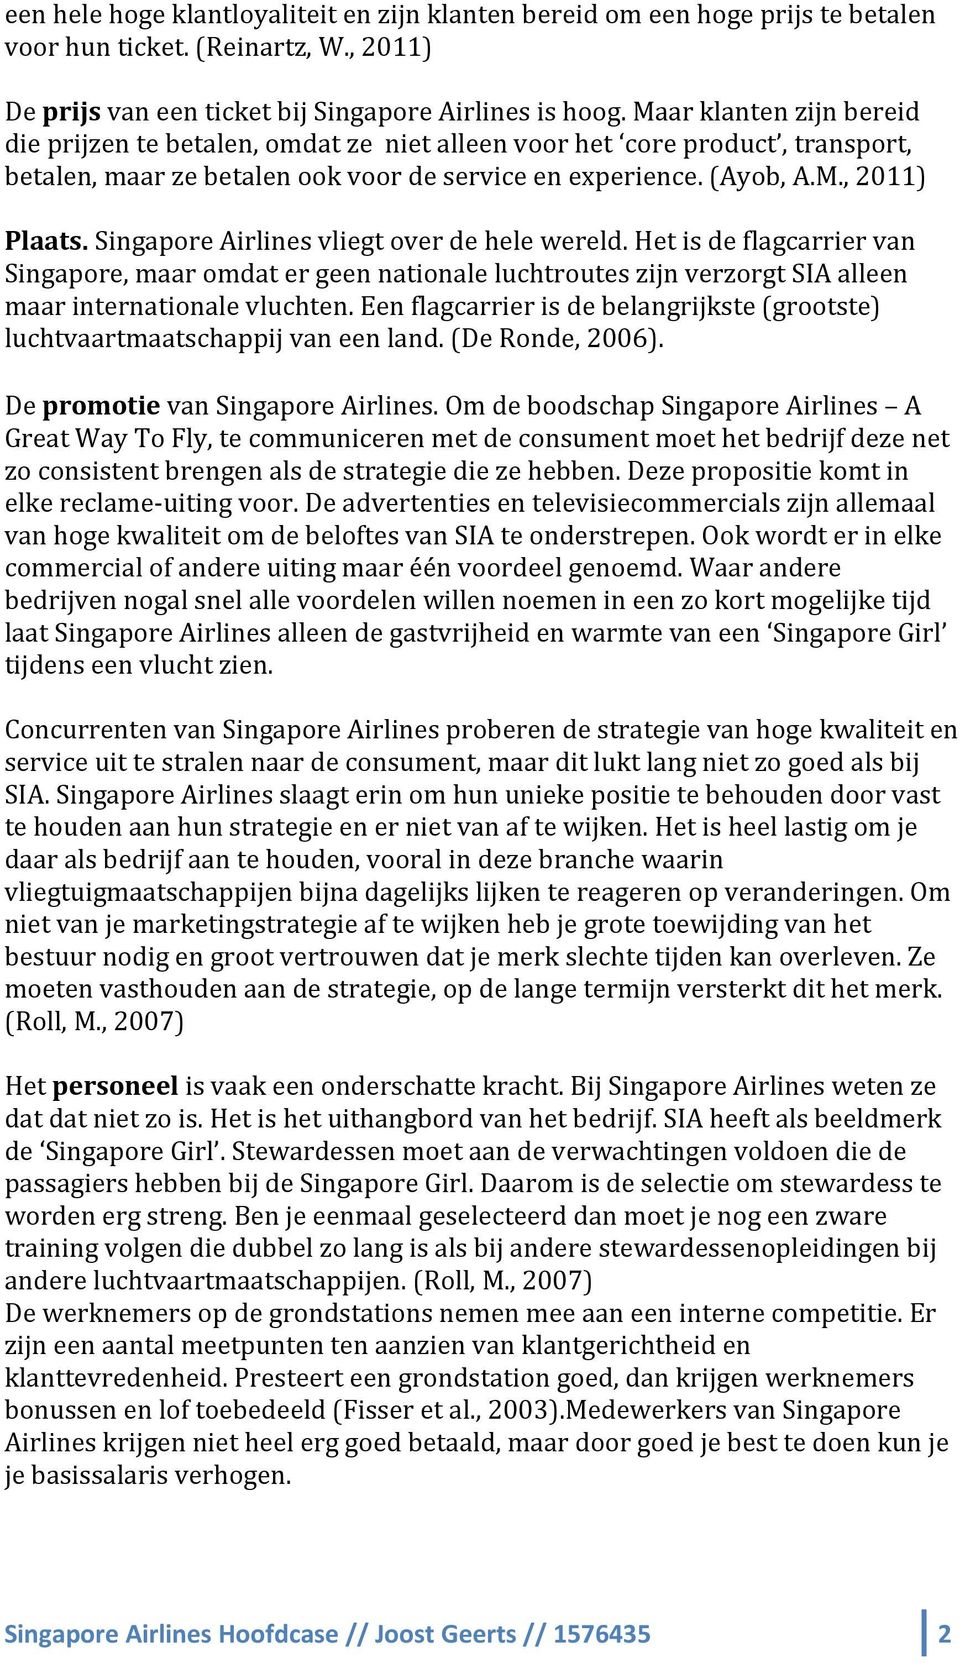 Singapore Airlines vliegt over de hele wereld. Het is de flagcarrier van Singapore, maar omdat er geen nationale luchtroutes zijn verzorgt SIA alleen maar internationale vluchten.